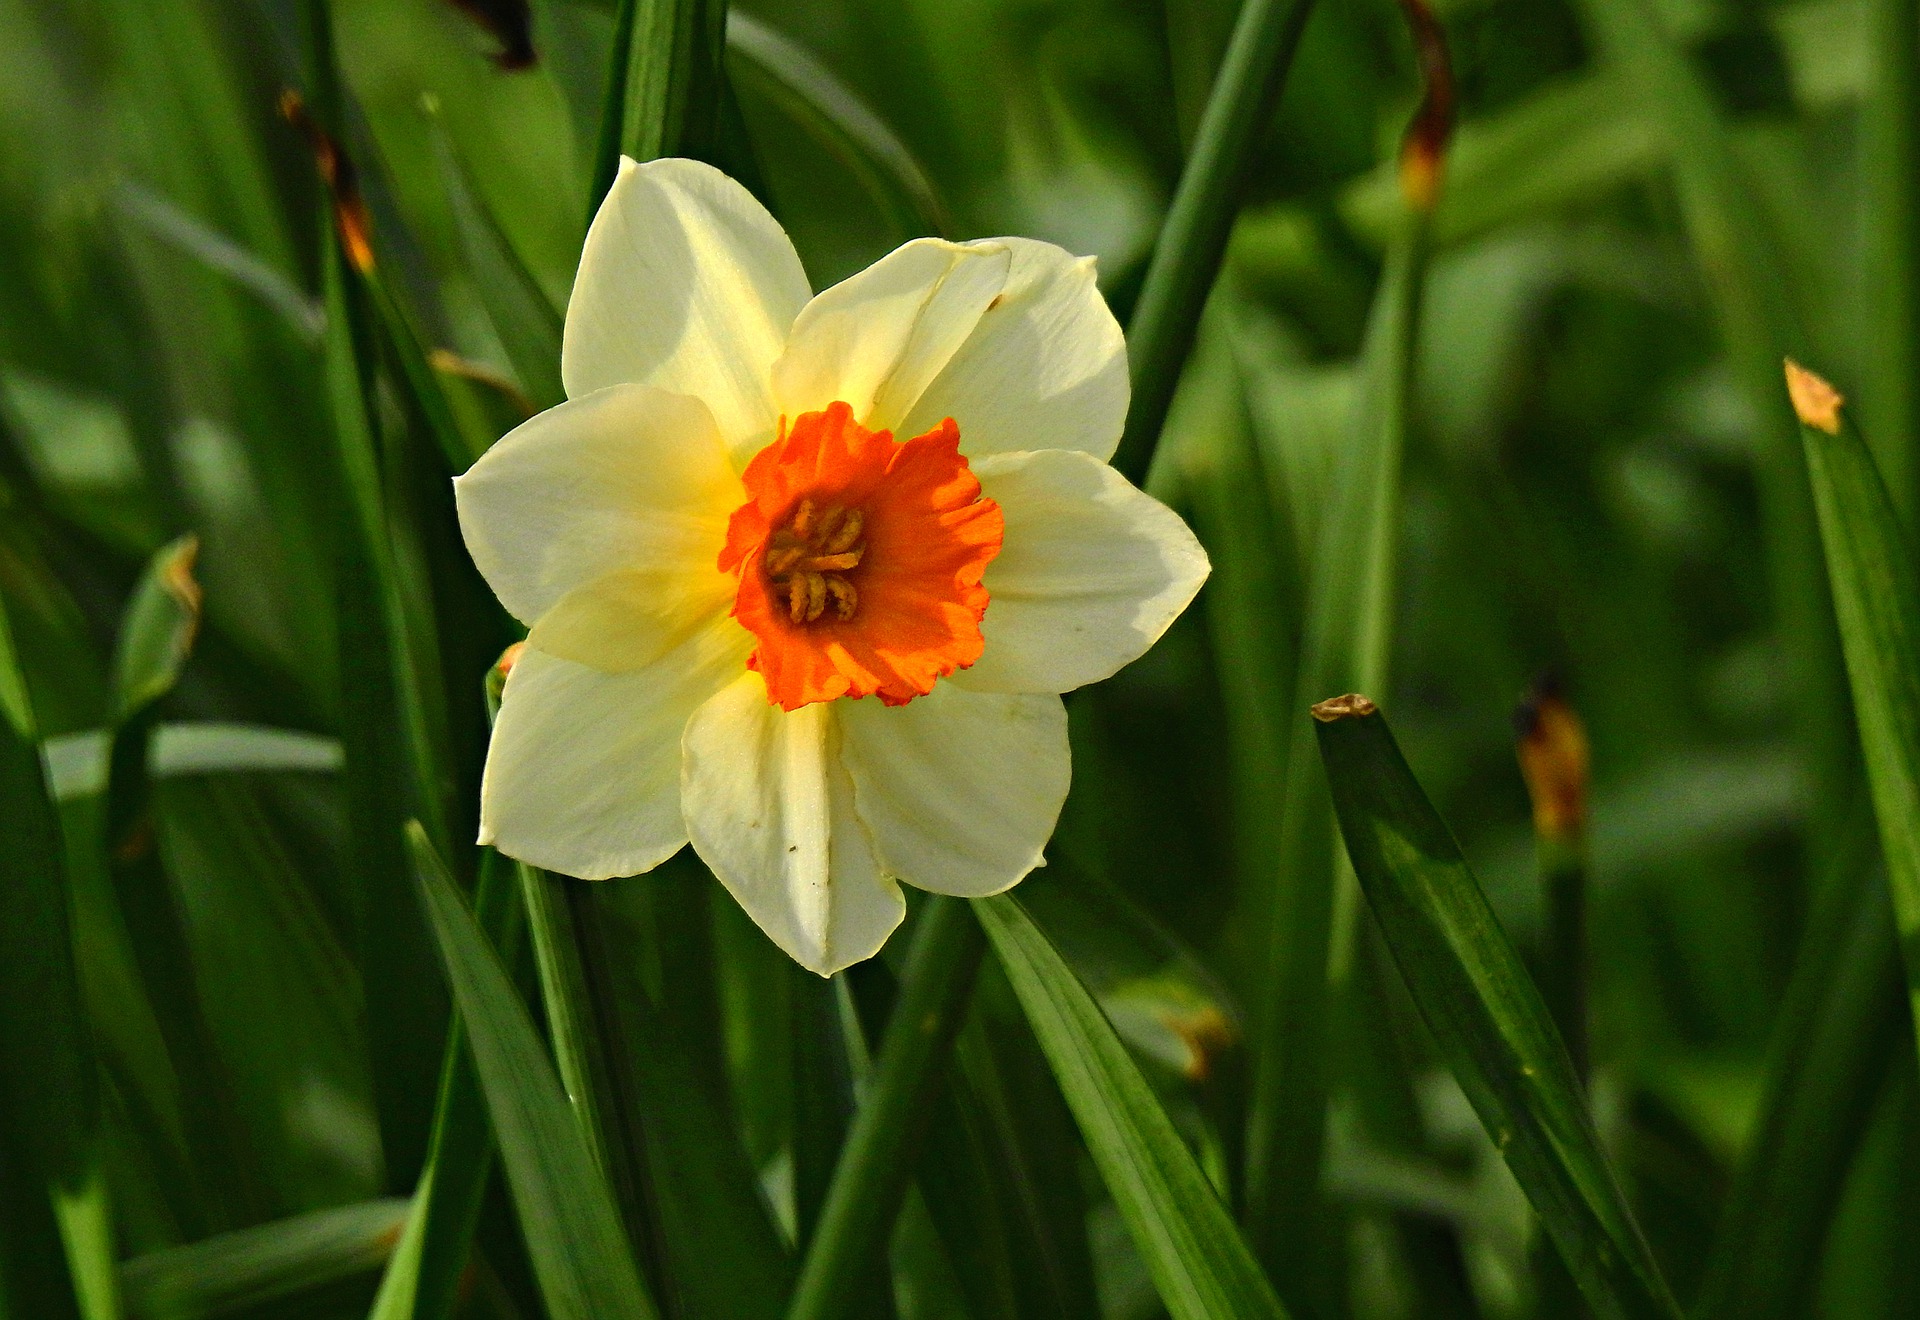 daffodil-4930263_1920